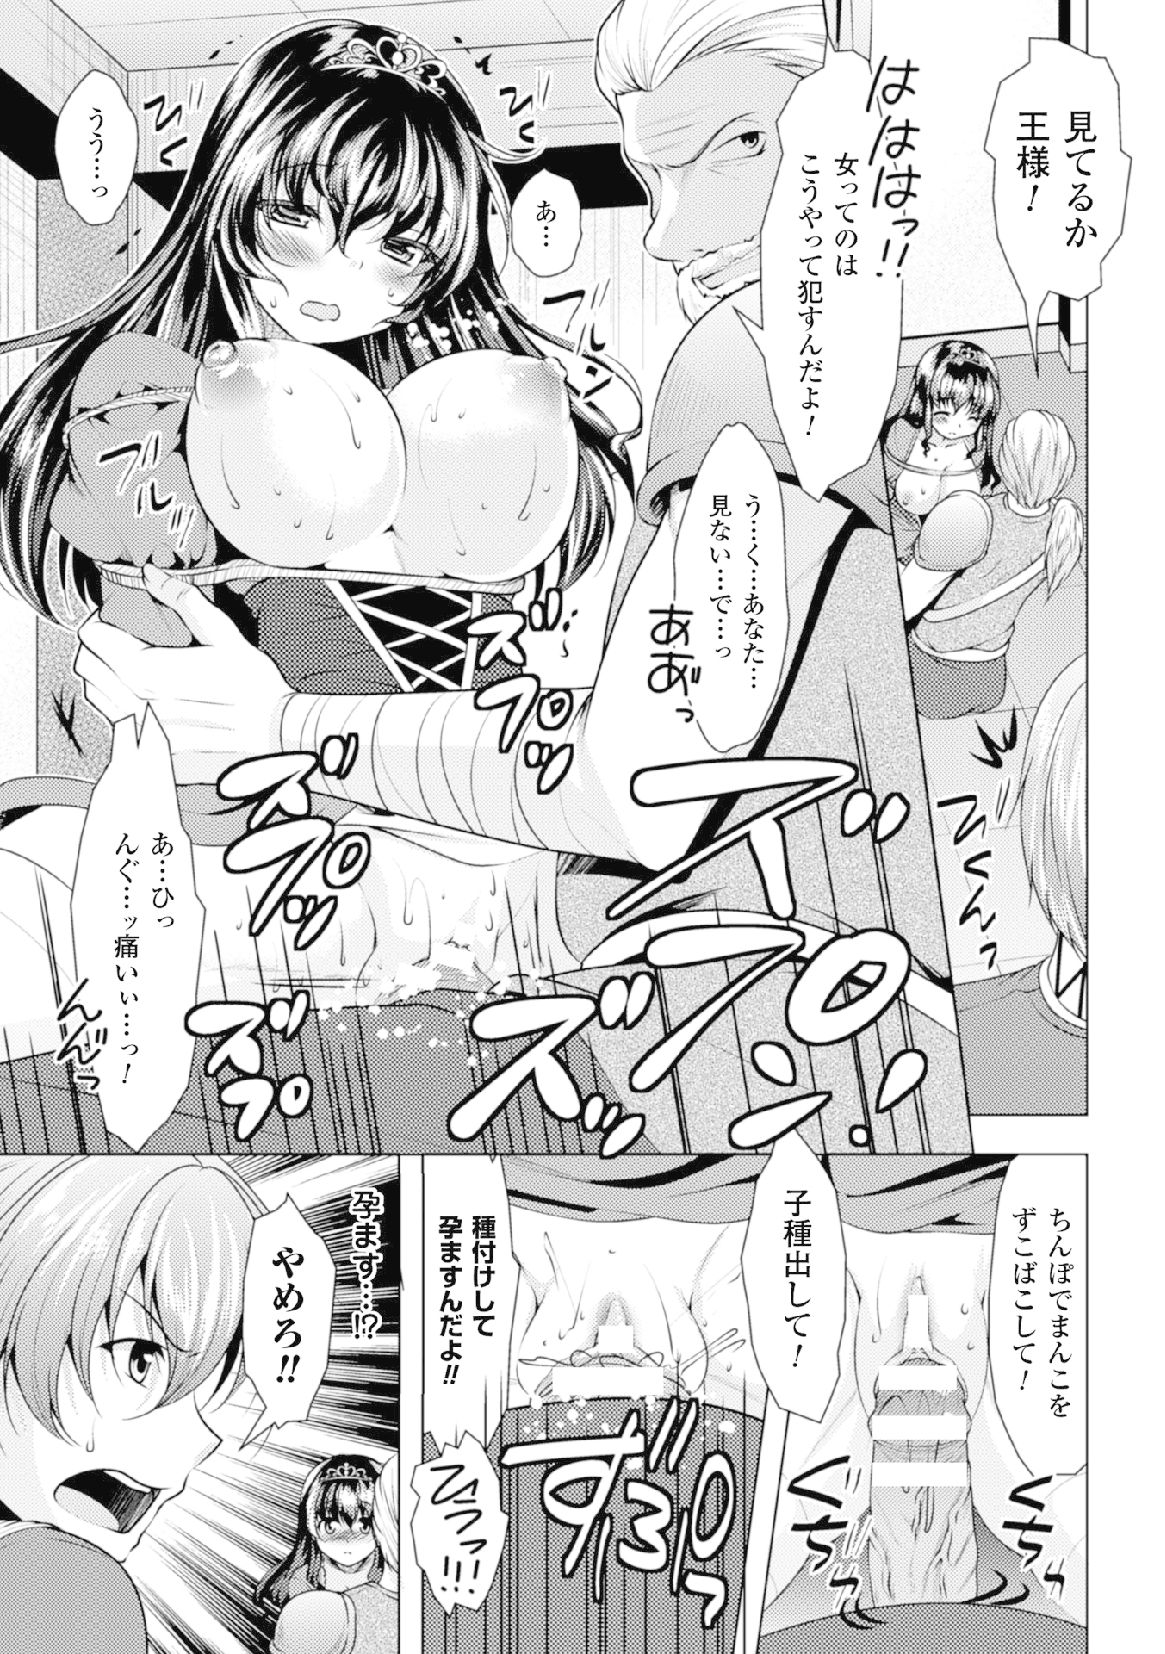 2Dコミックマガジン「射精にちつないしゃせいさる女達」Vol。 2